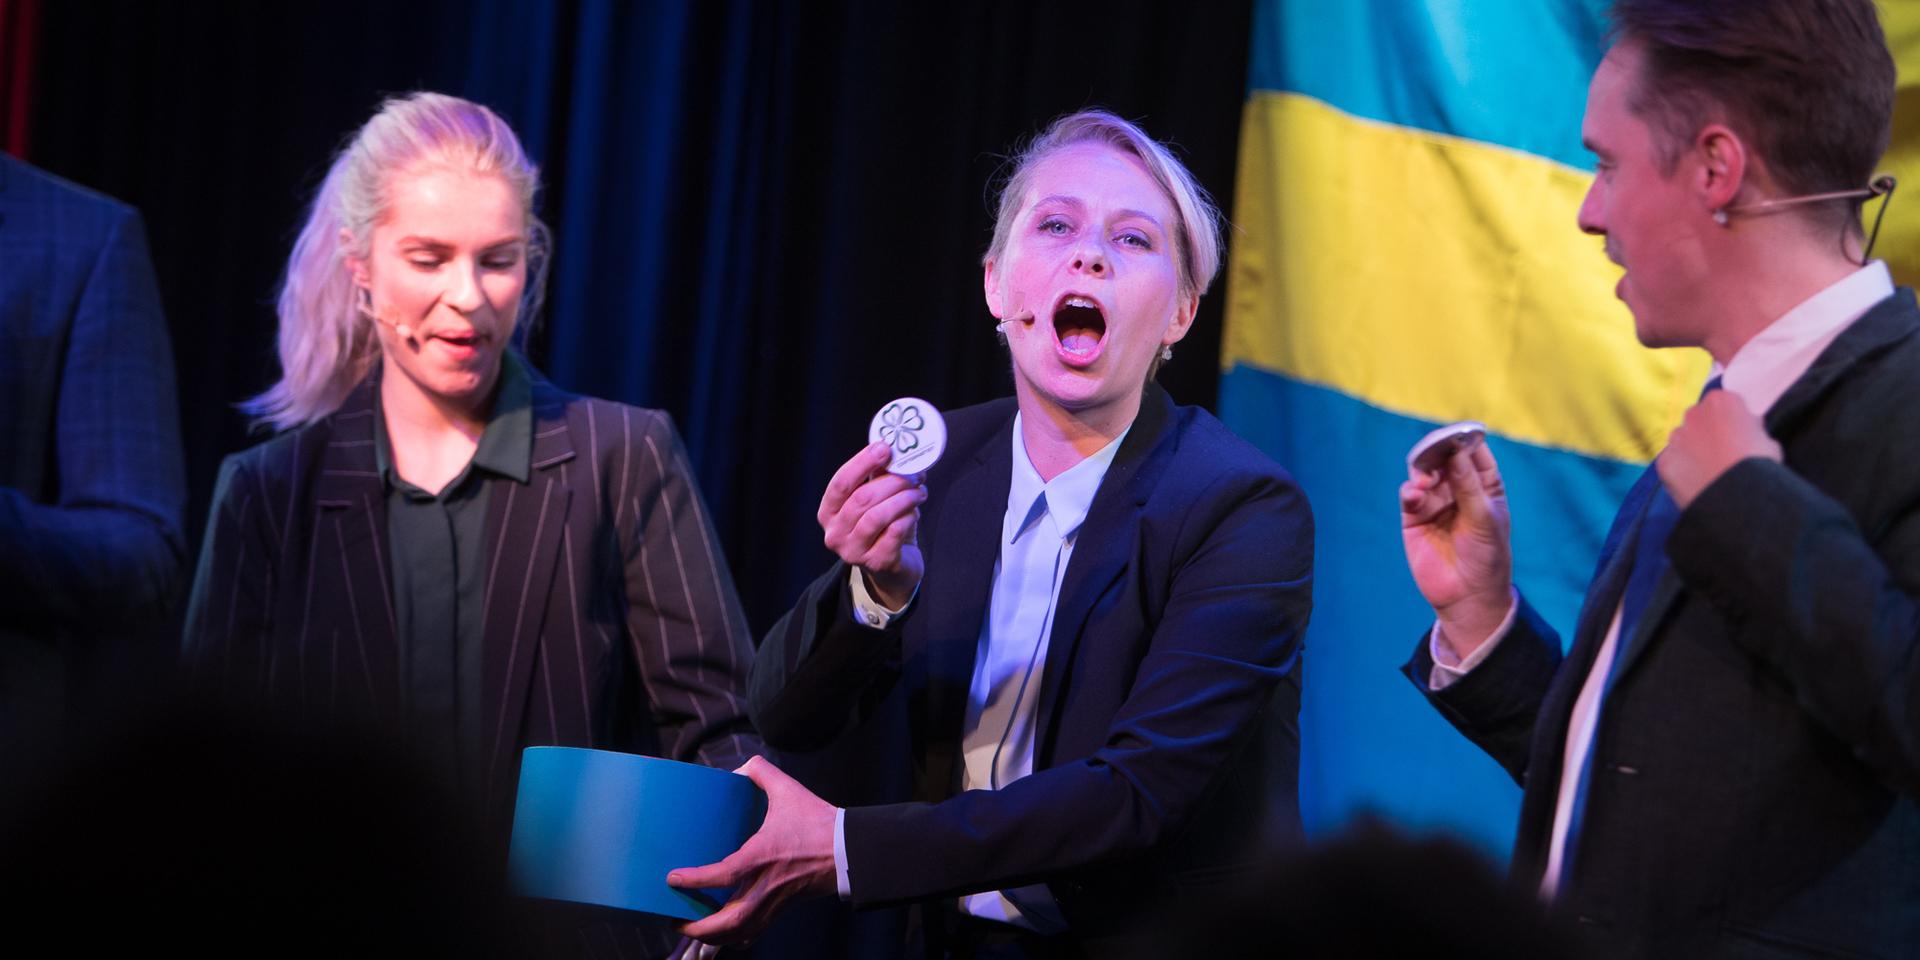 Partistrid. Sofia Henningsson, Frida Sundström och John Pekkari på Improverket.